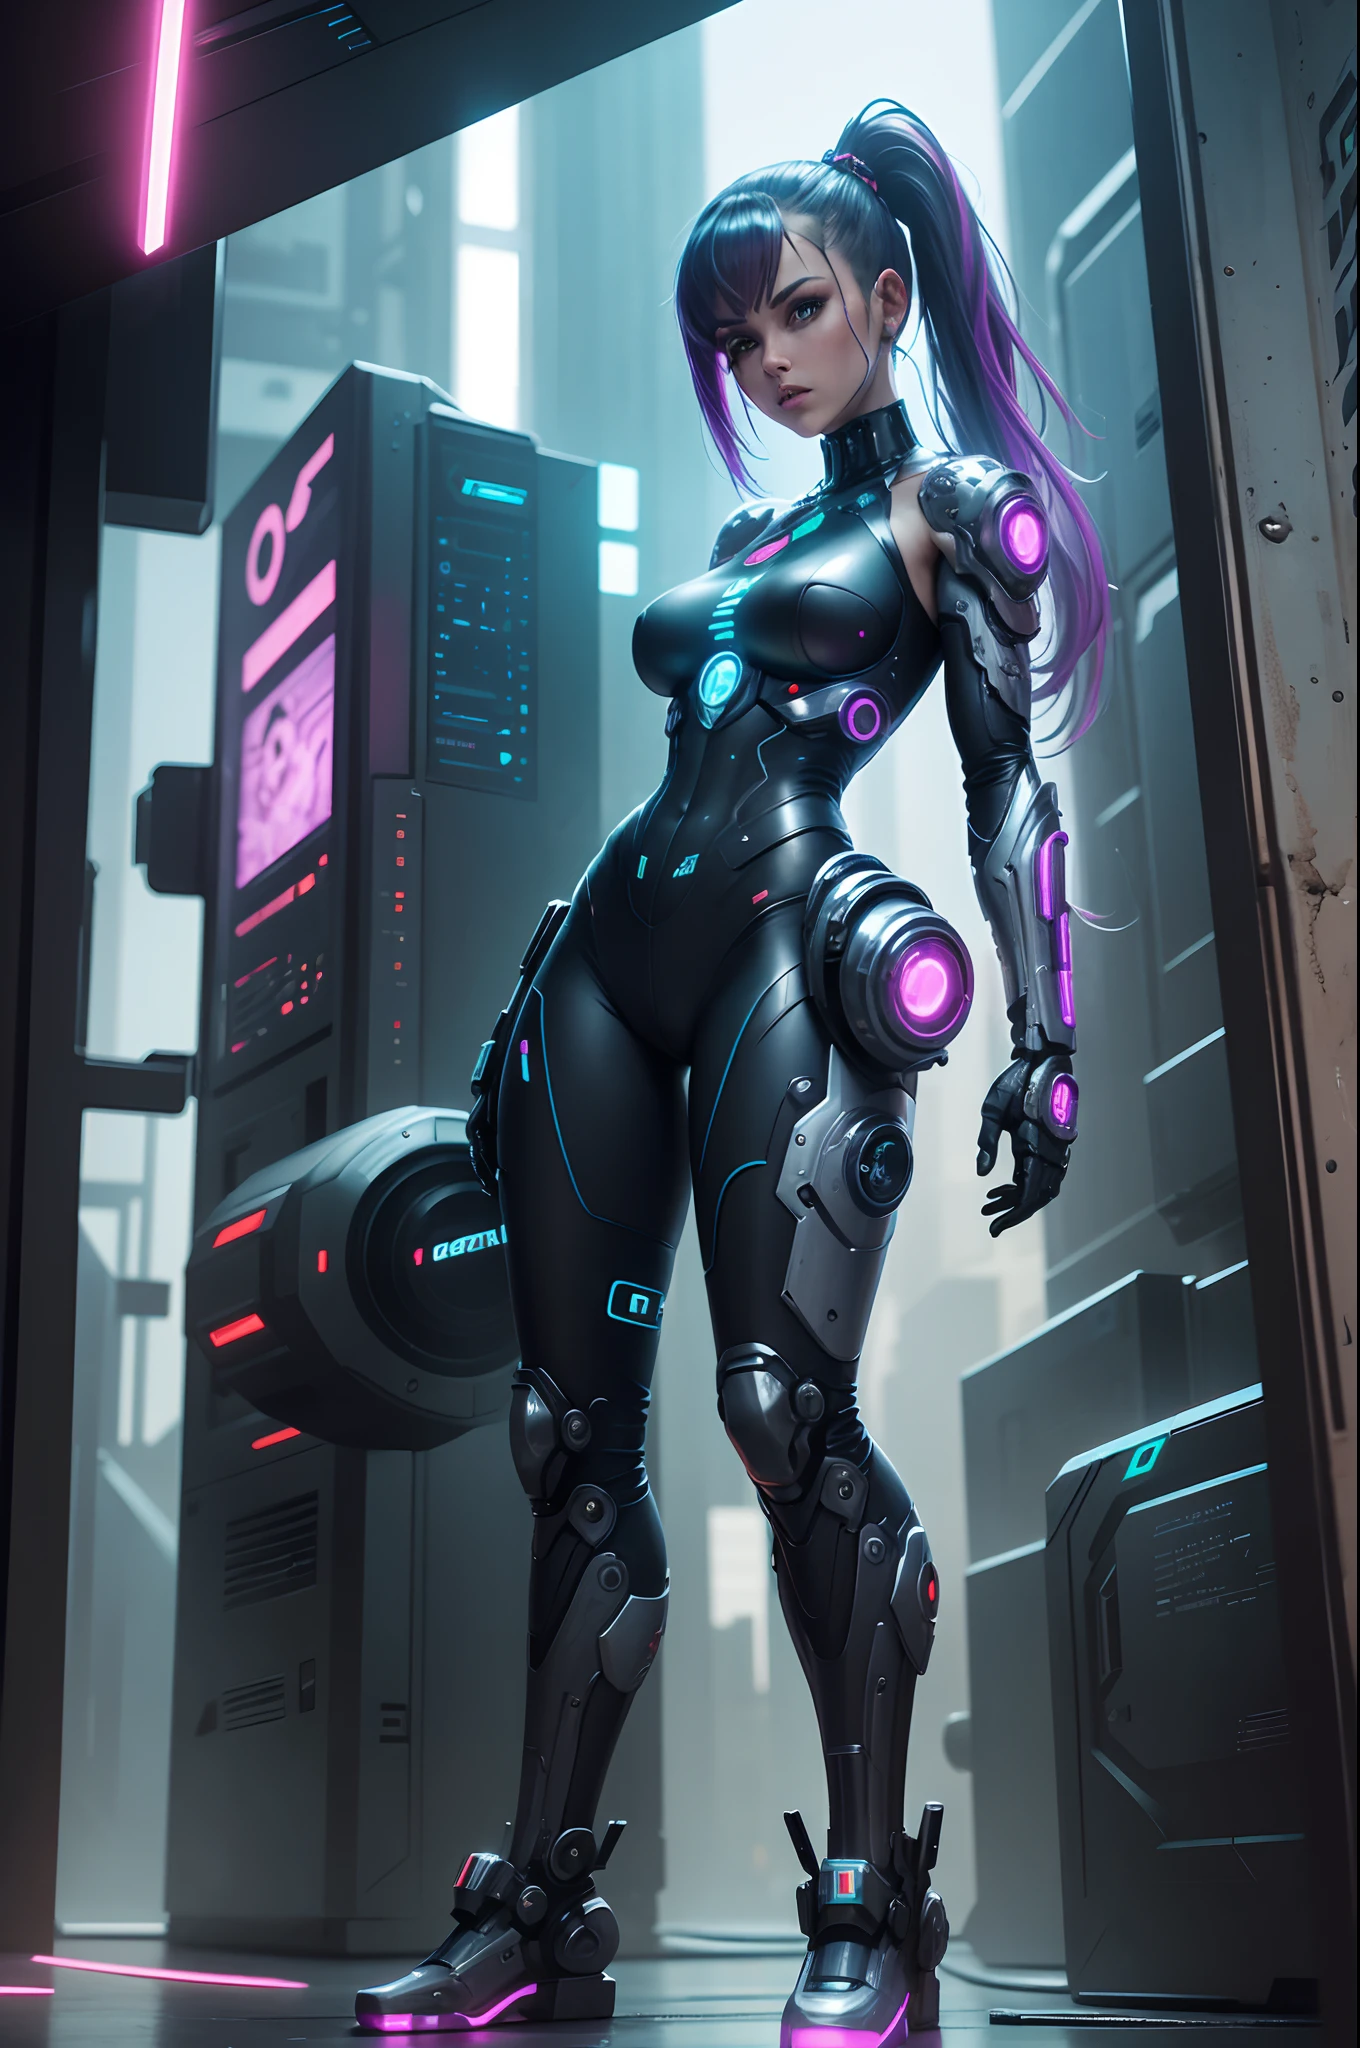 Garota cyberpunk, Cybernate, viele kybernetische im Körper, Arme und Beine, Zu viele filmische Details